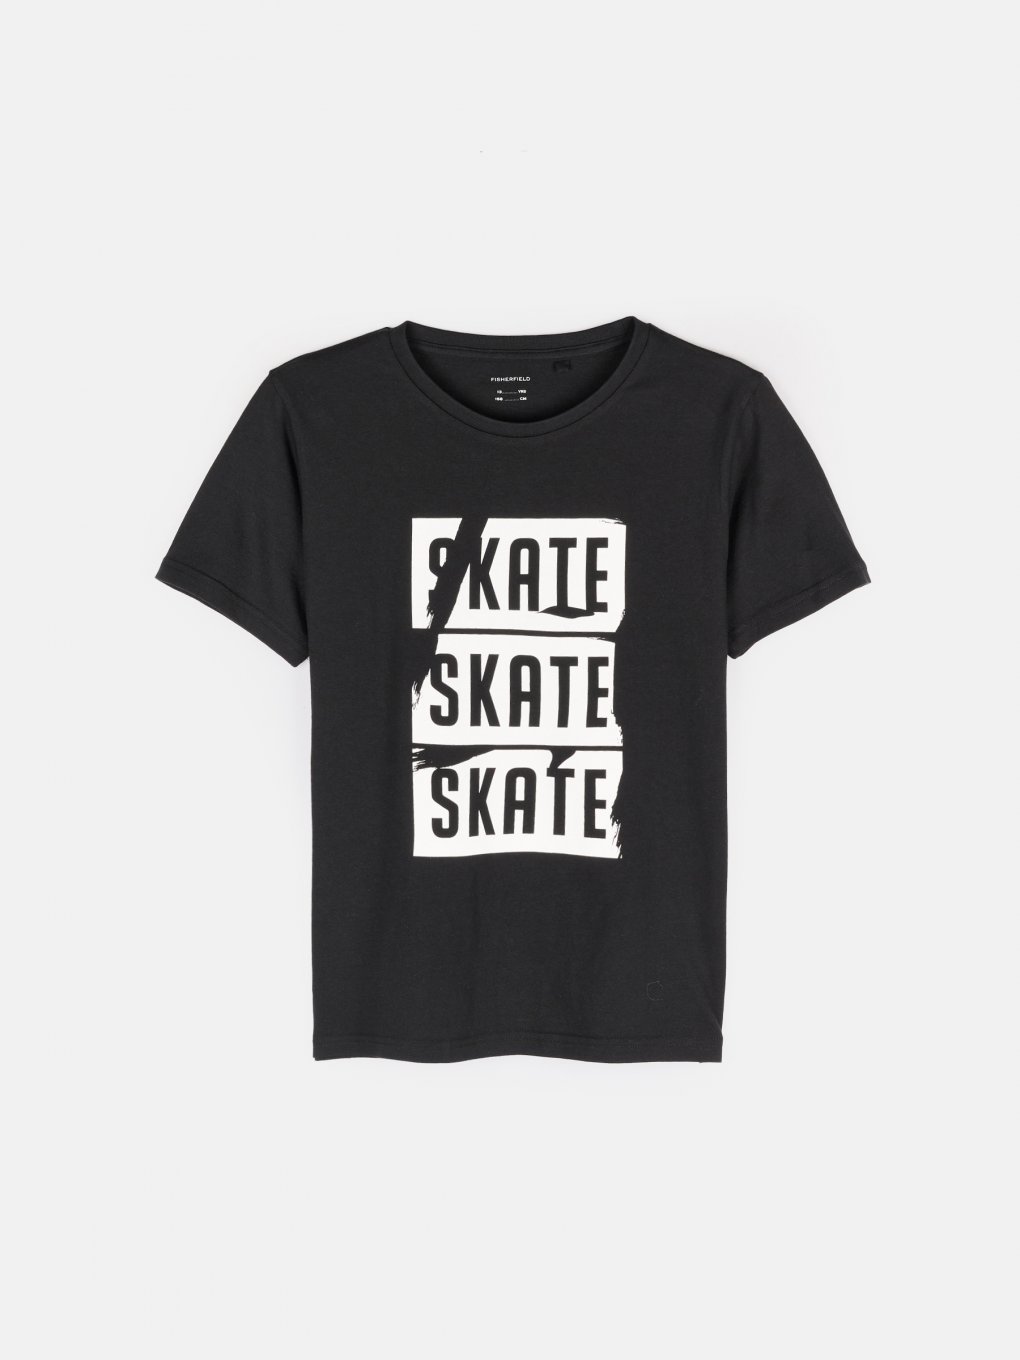 Chłopięca bawełniana koszulka z napisem Skate